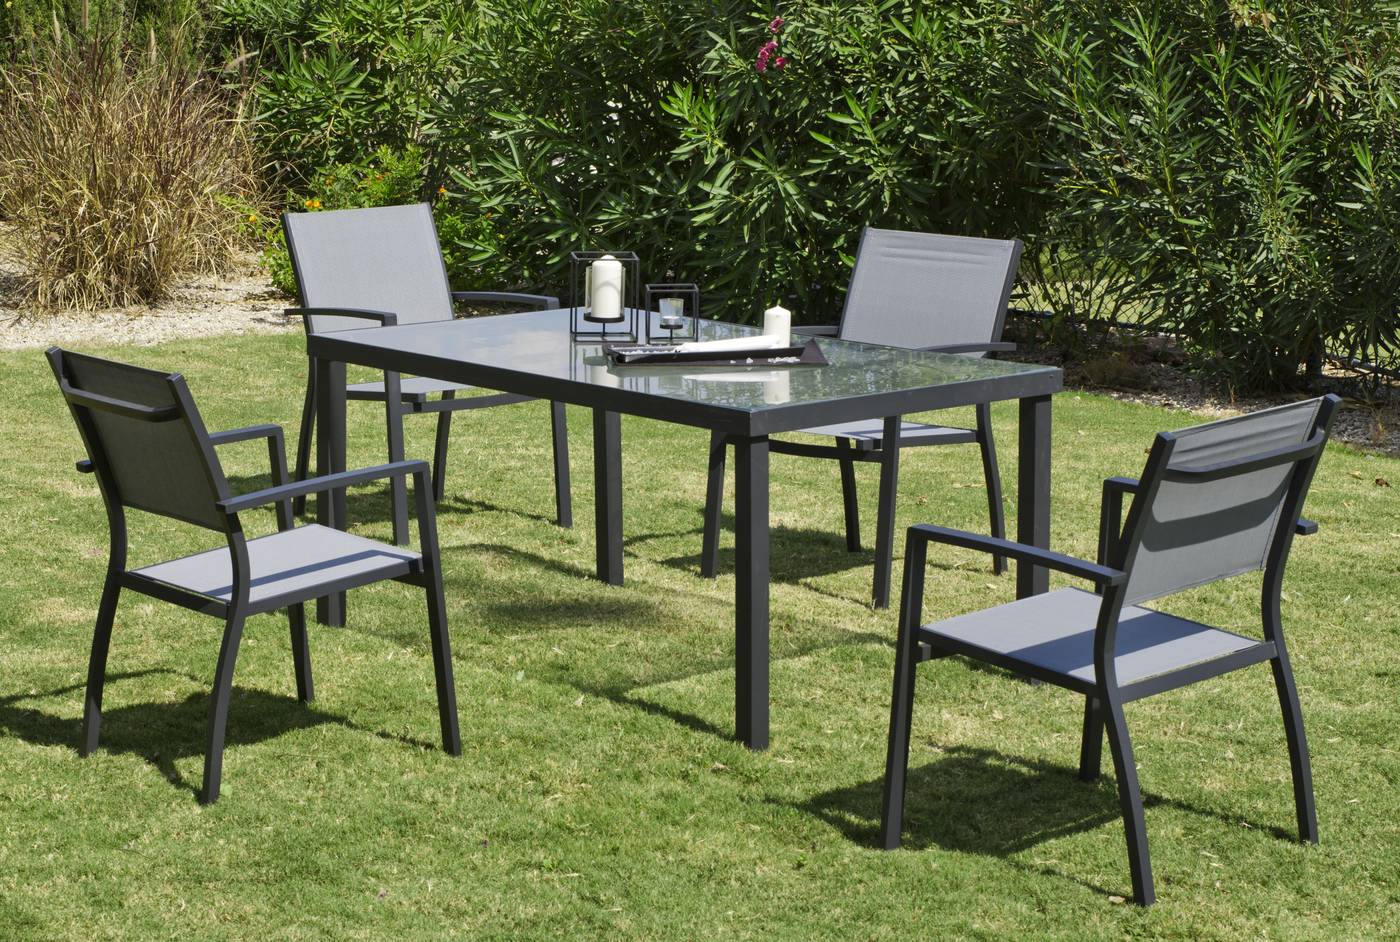 Conjunto de aluminio color antracita: mesa de 150 cm. + 4 sillones apilables de alumino y textilen